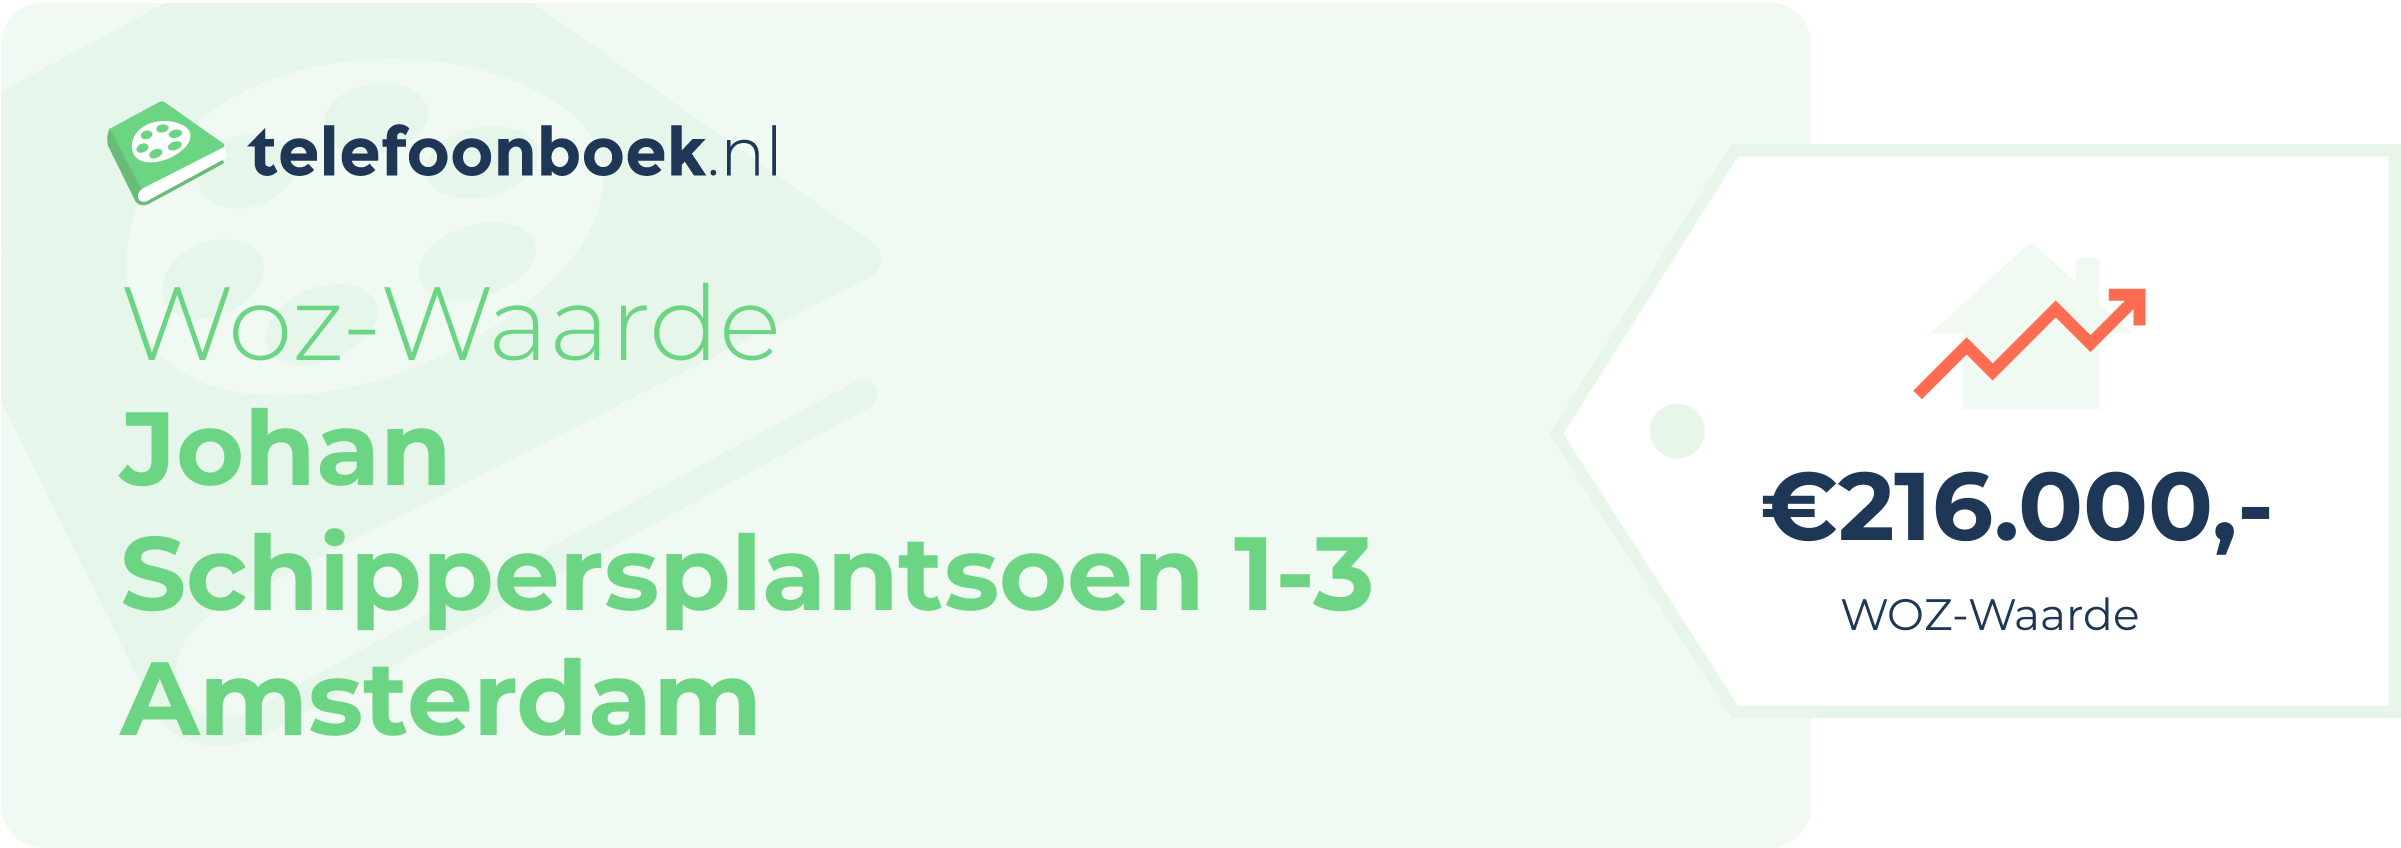 WOZ-waarde Johan Schippersplantsoen 1-3 Amsterdam